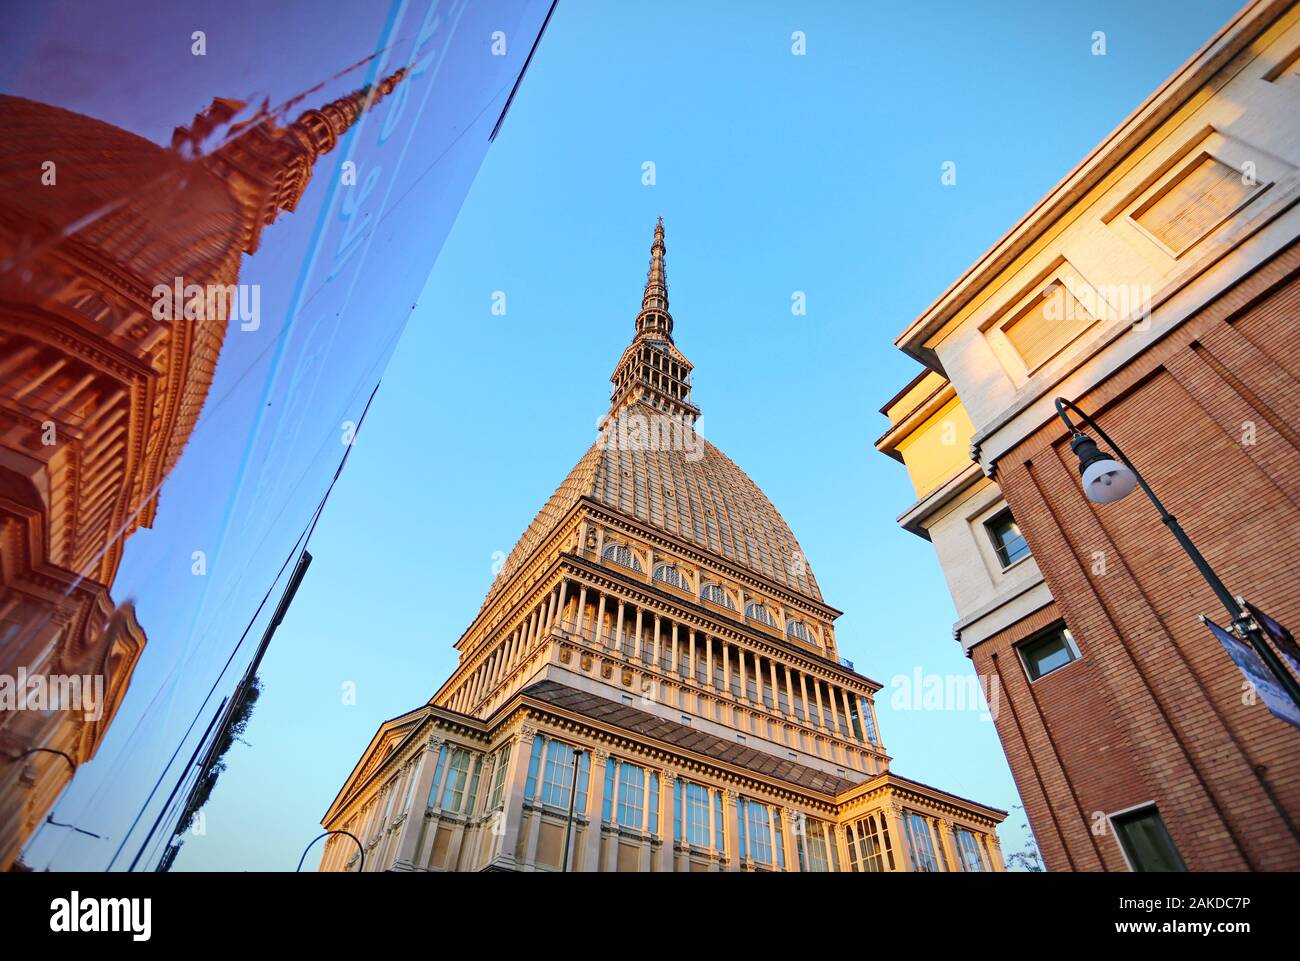 La Mole Antonelliana è il simbolo della città di Torino e al suo interno ospita il Museo Nazionale del Cinema. Torino, Italia - Aprile 2018 Foto Stock